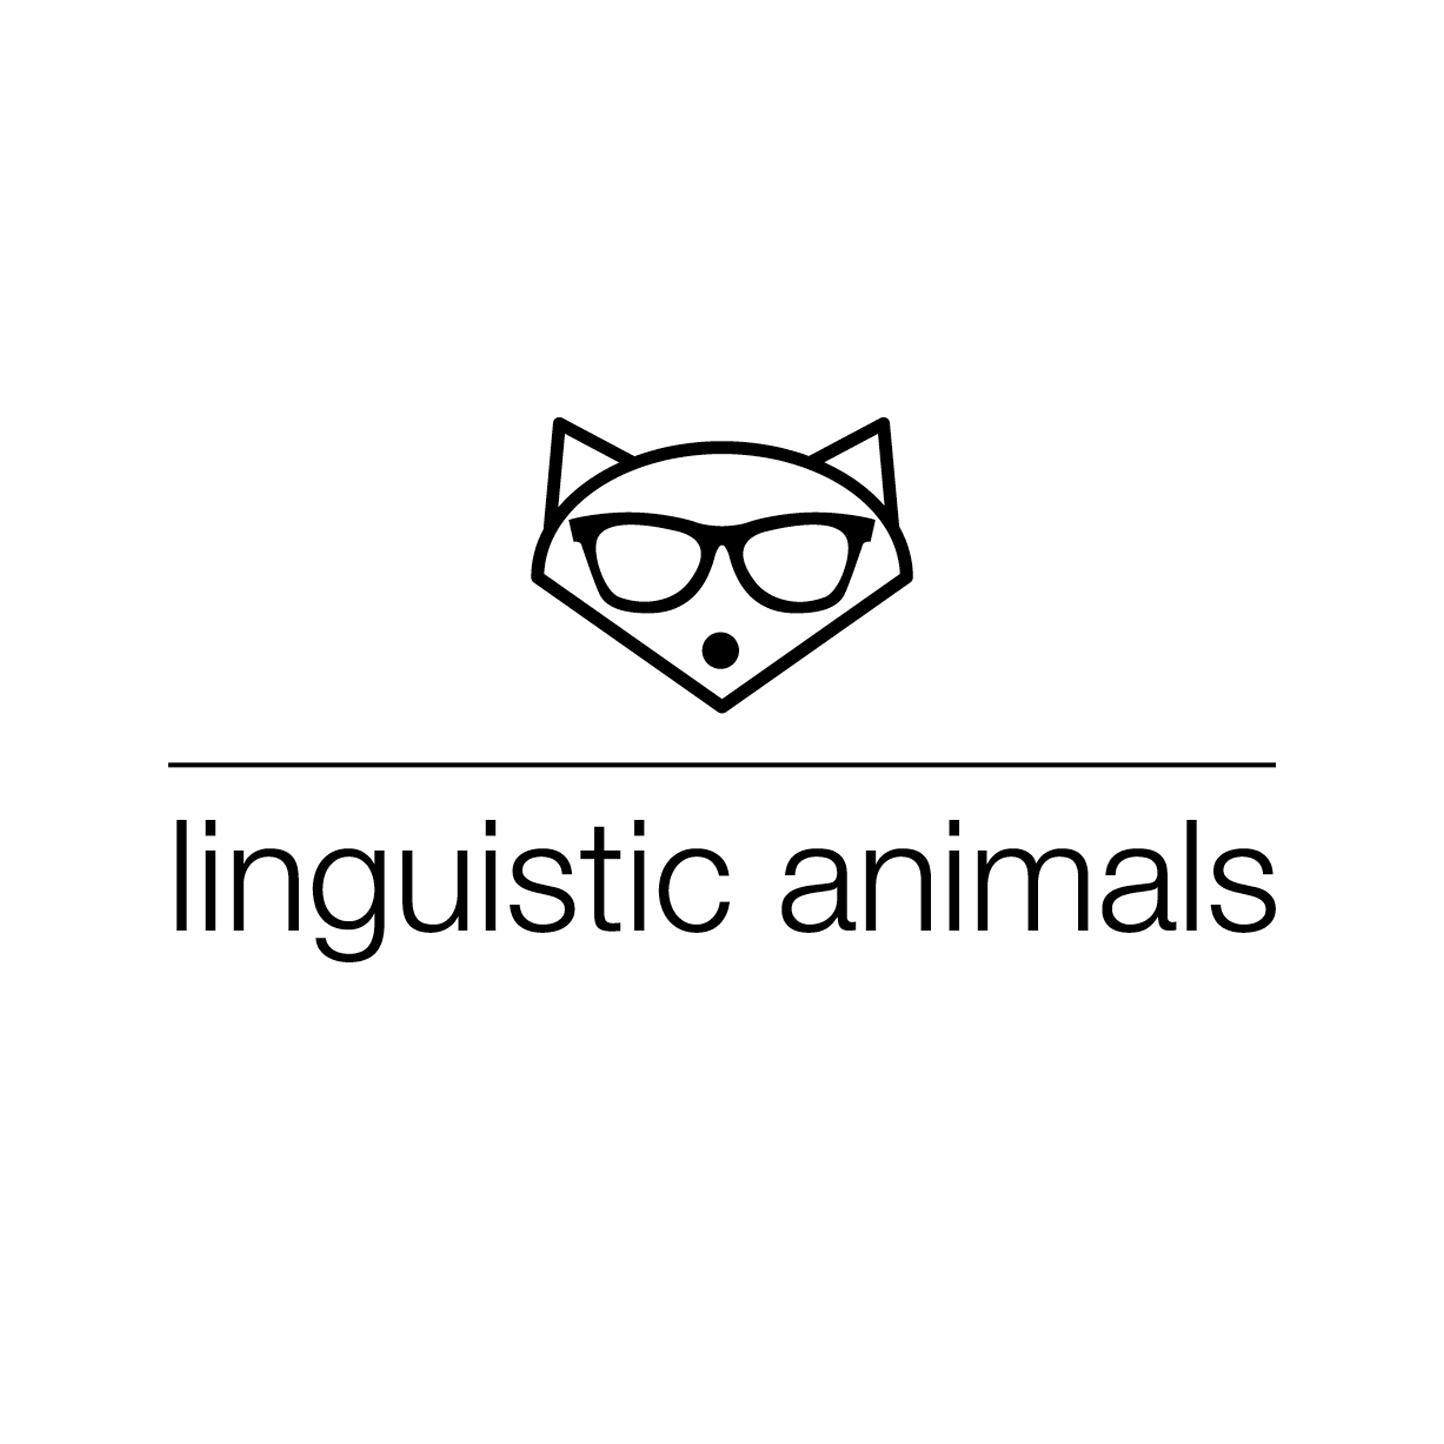 LINGUISTIC ANIMALS